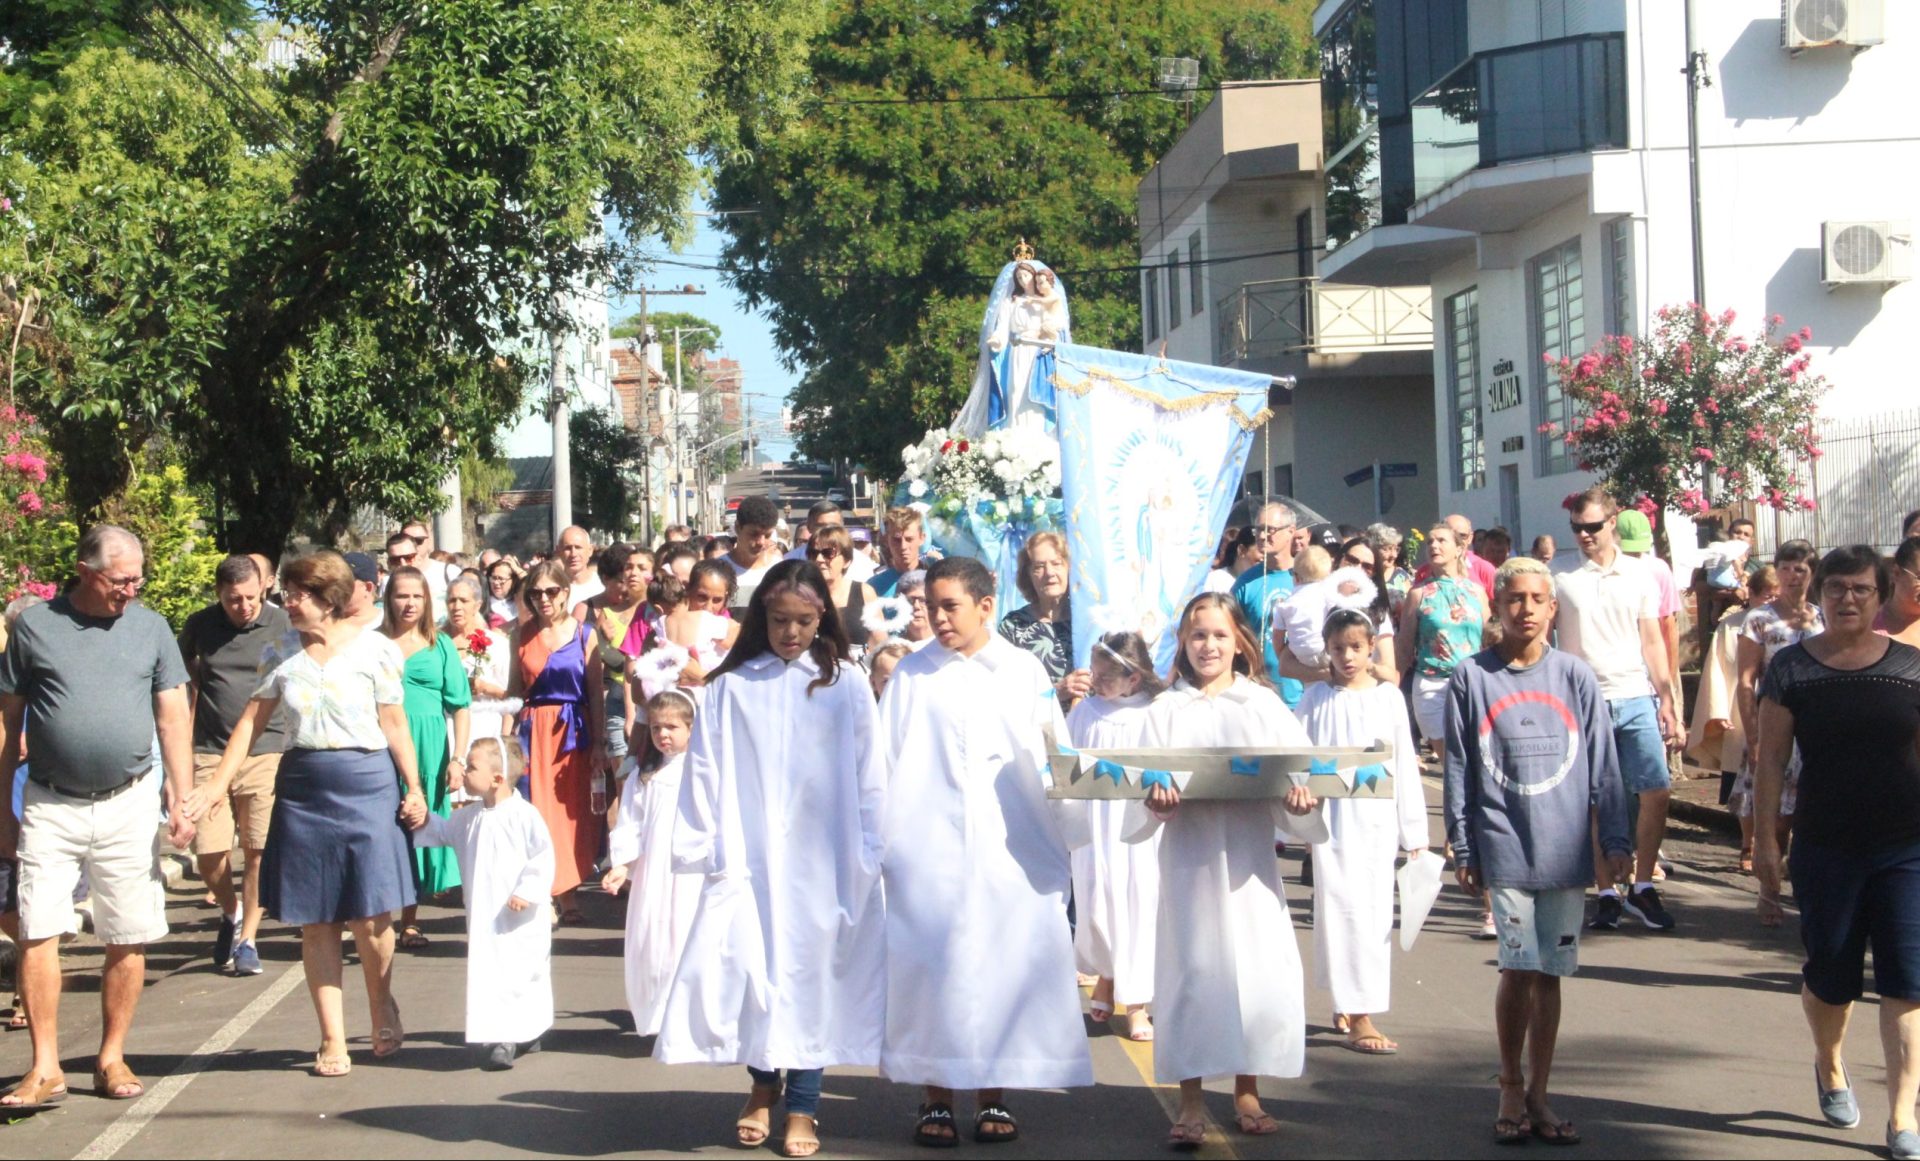 FOTOS: Procissão de Nossa Senhora dos Navegantes reúne centenas em Arroio do Meio